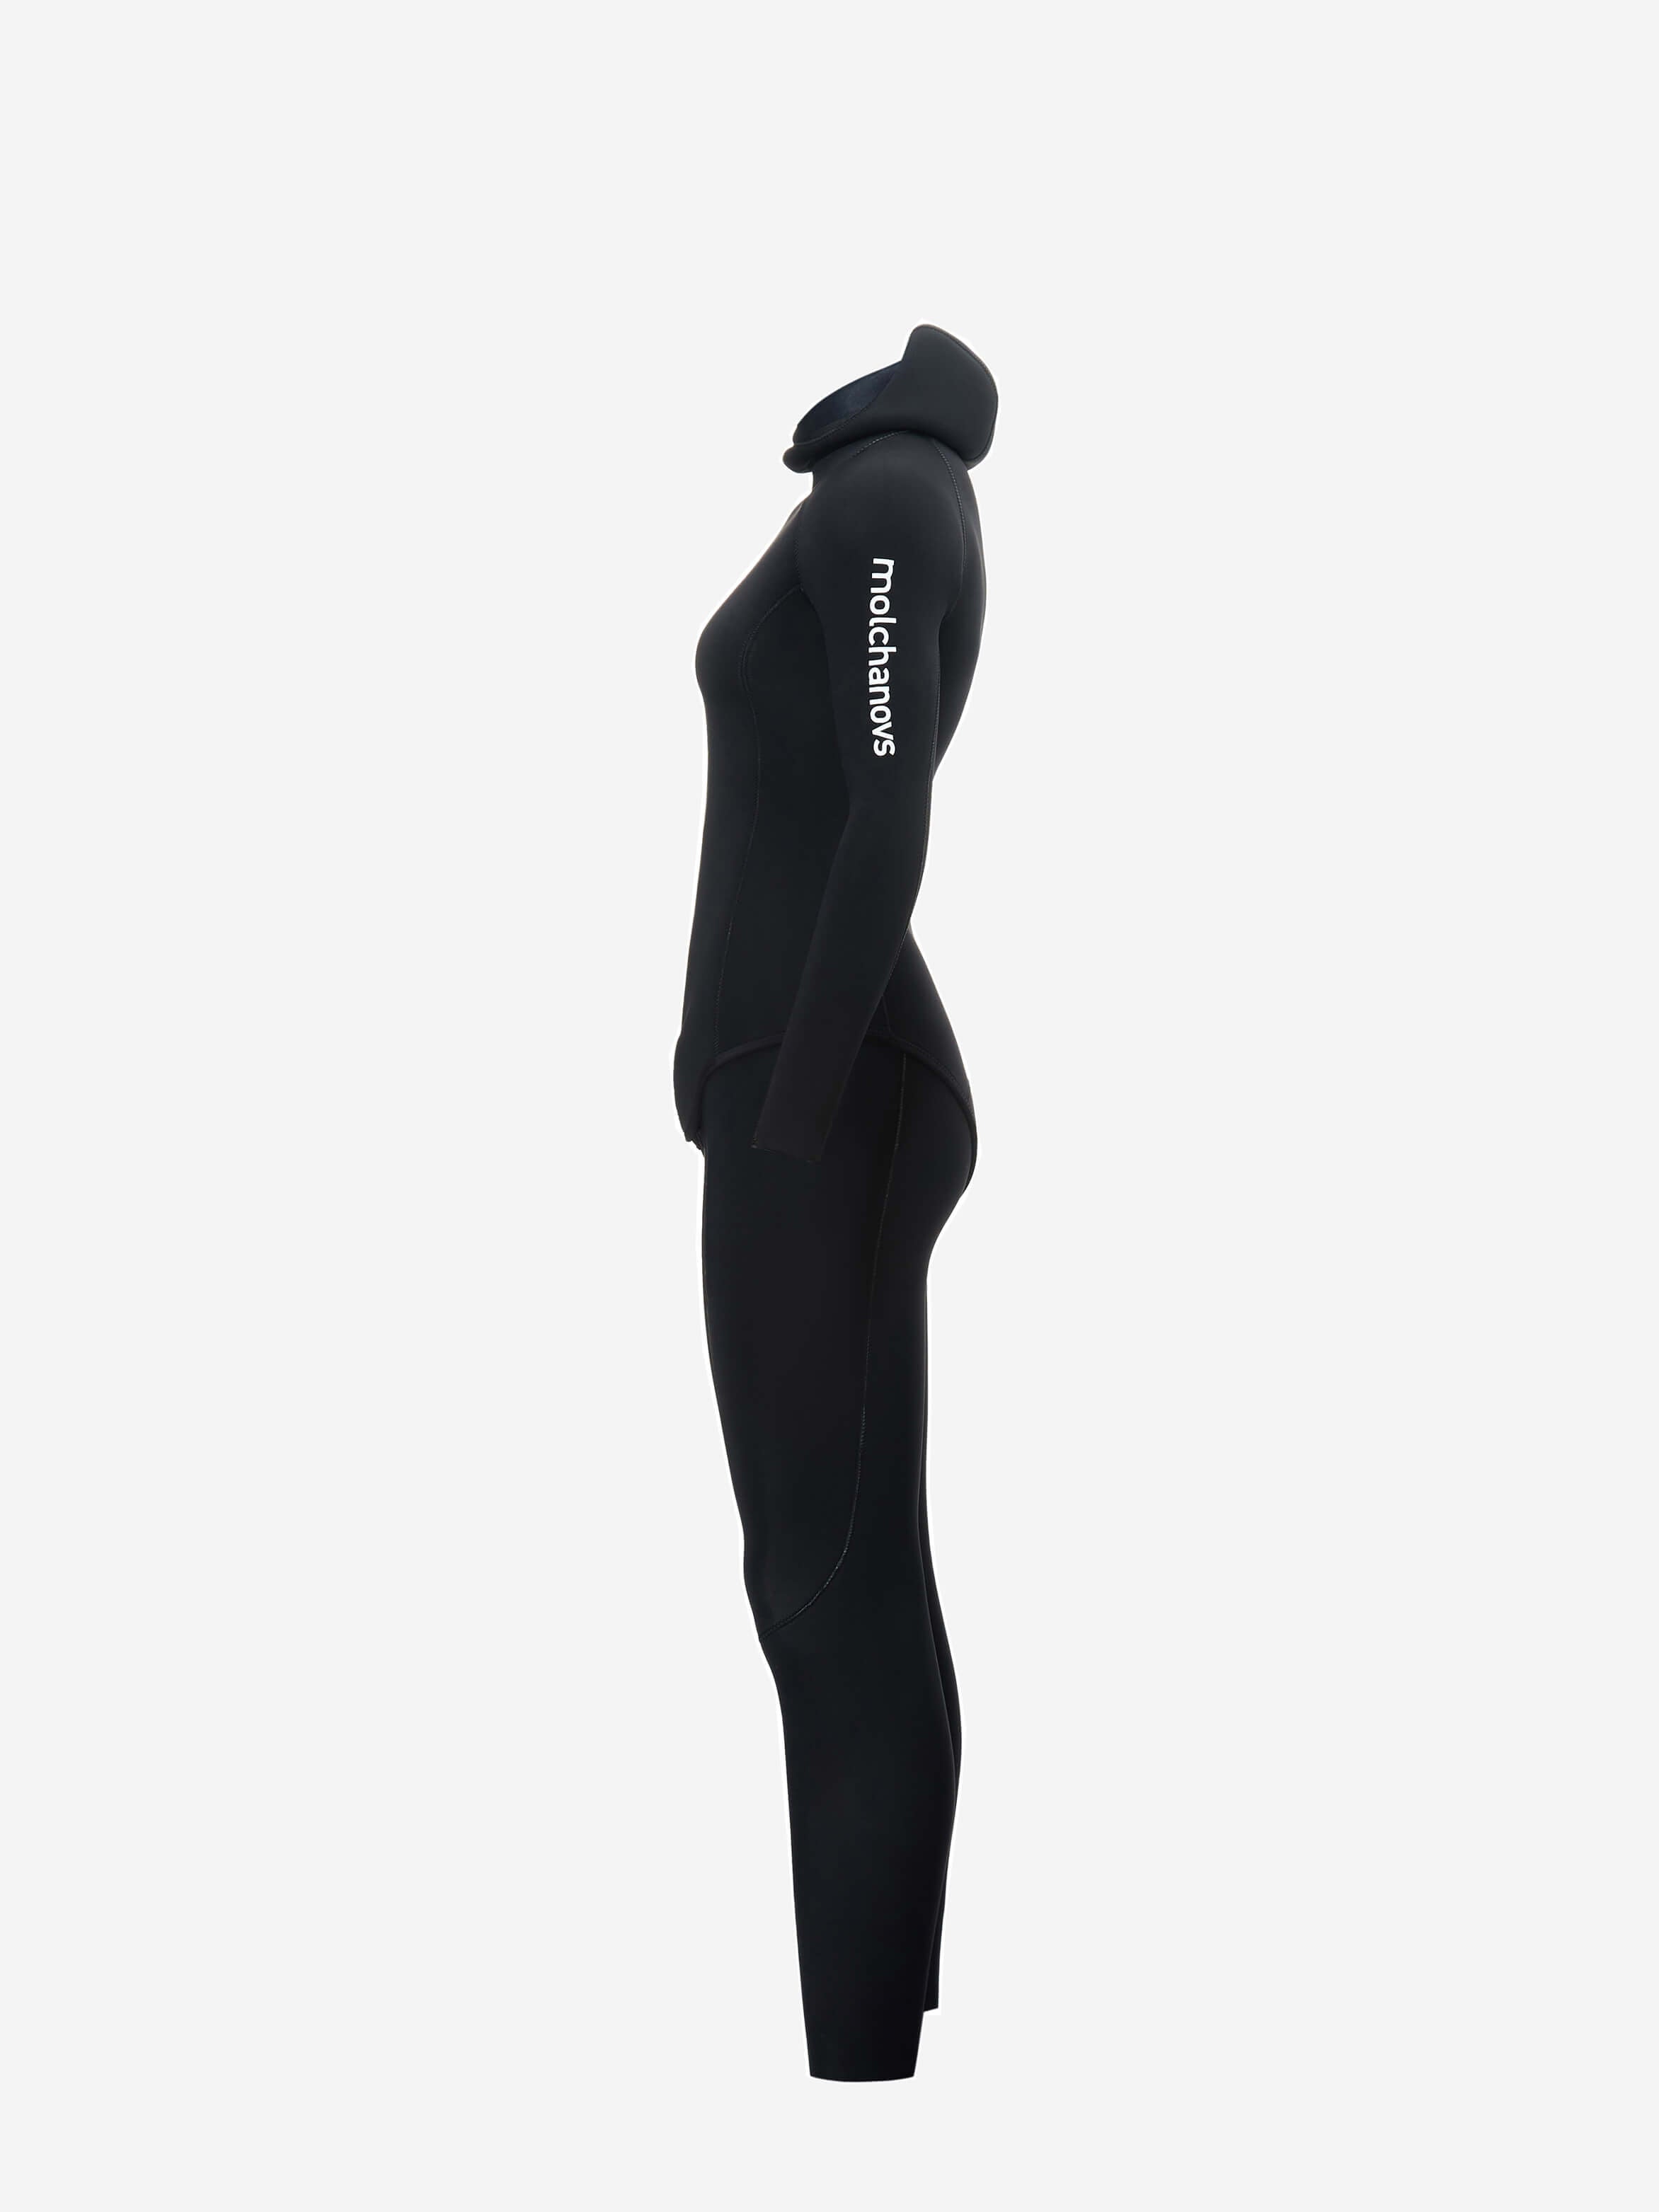 Women's SPORT Wetsuit 3mm Outside-Lined